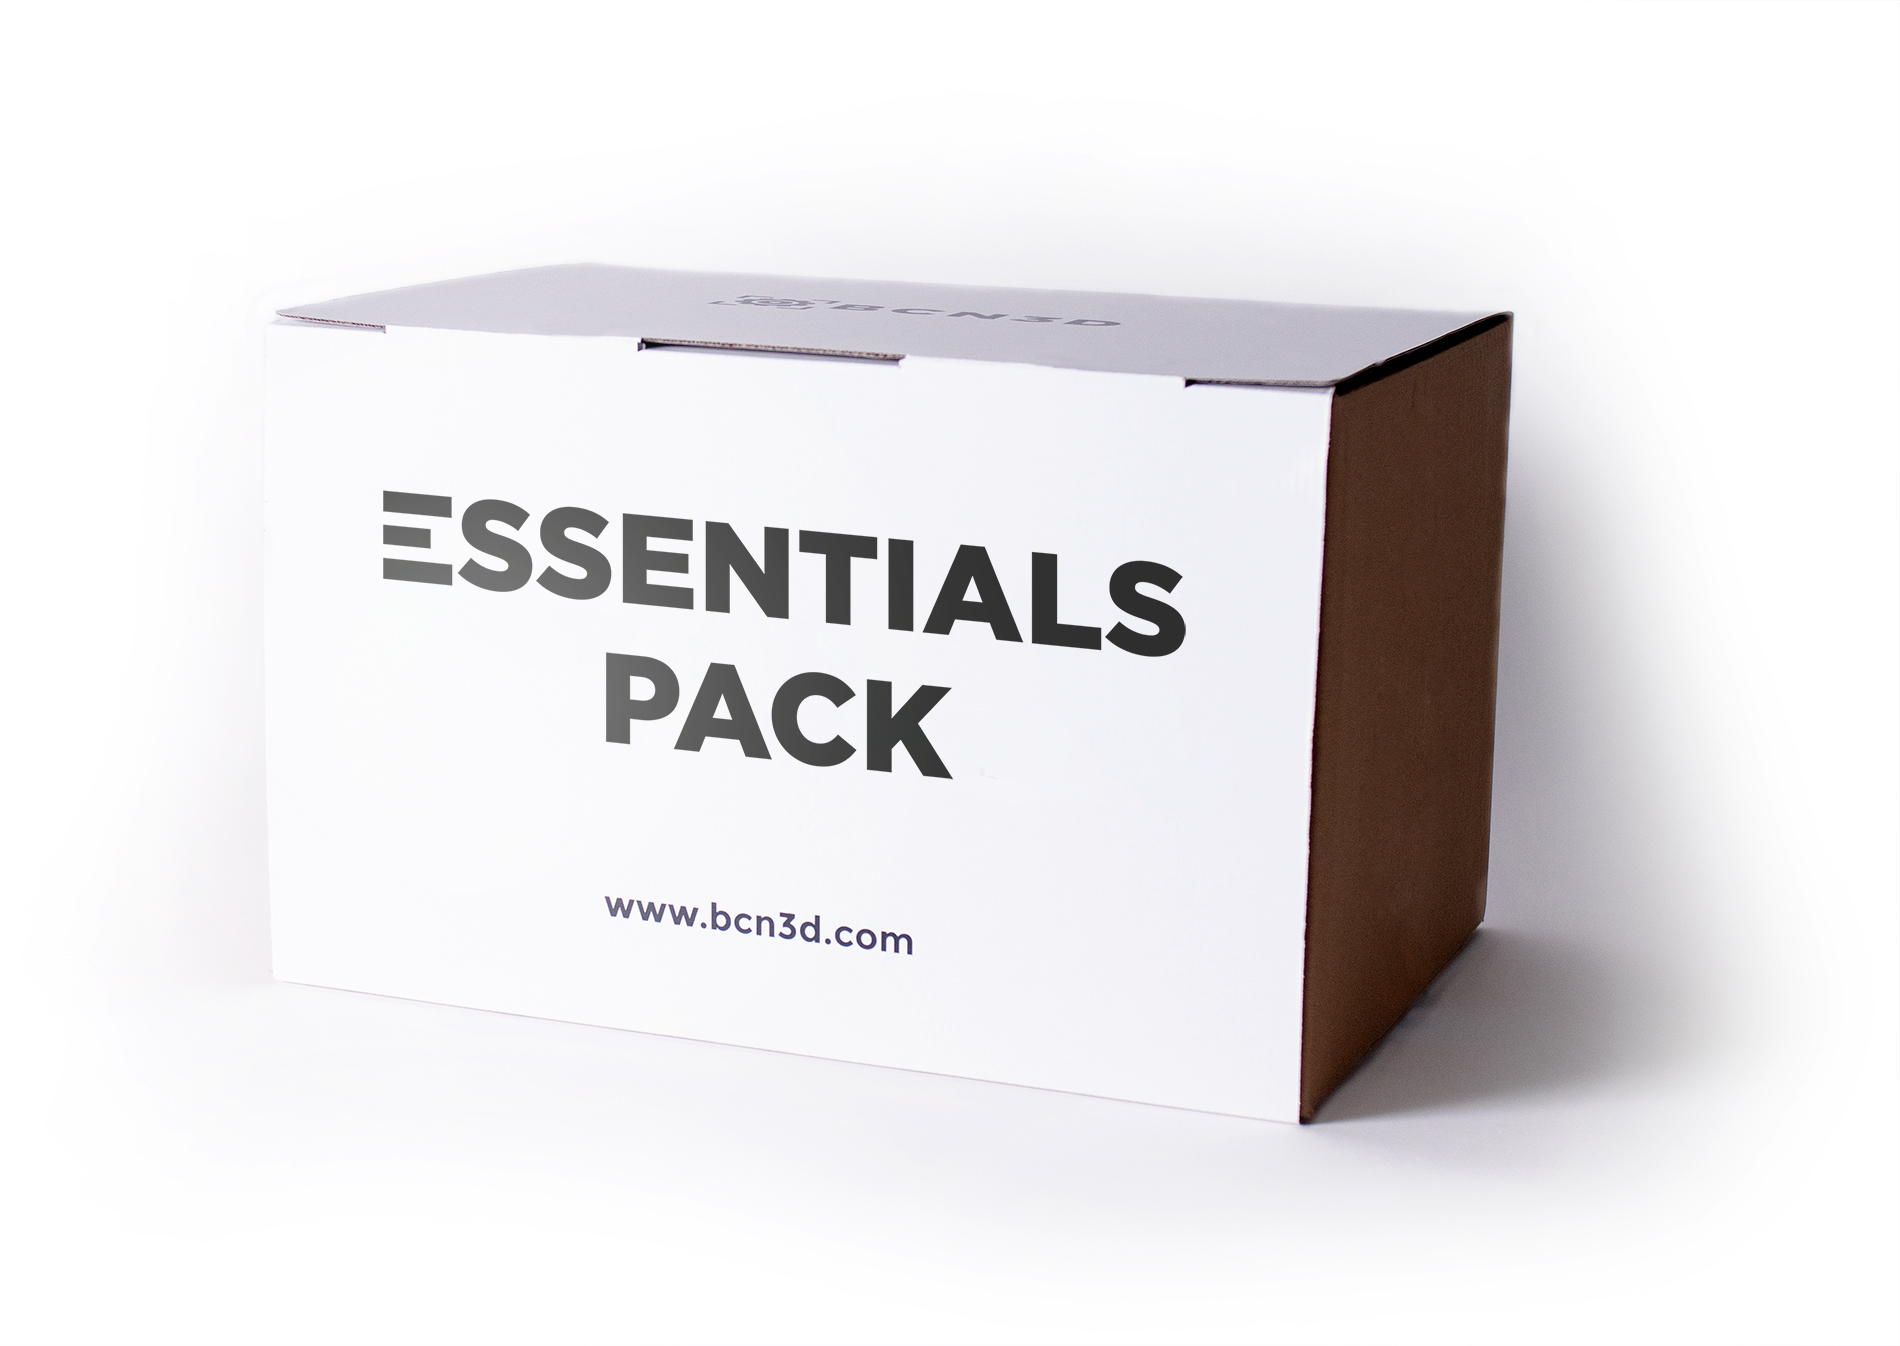 Essentials Pack